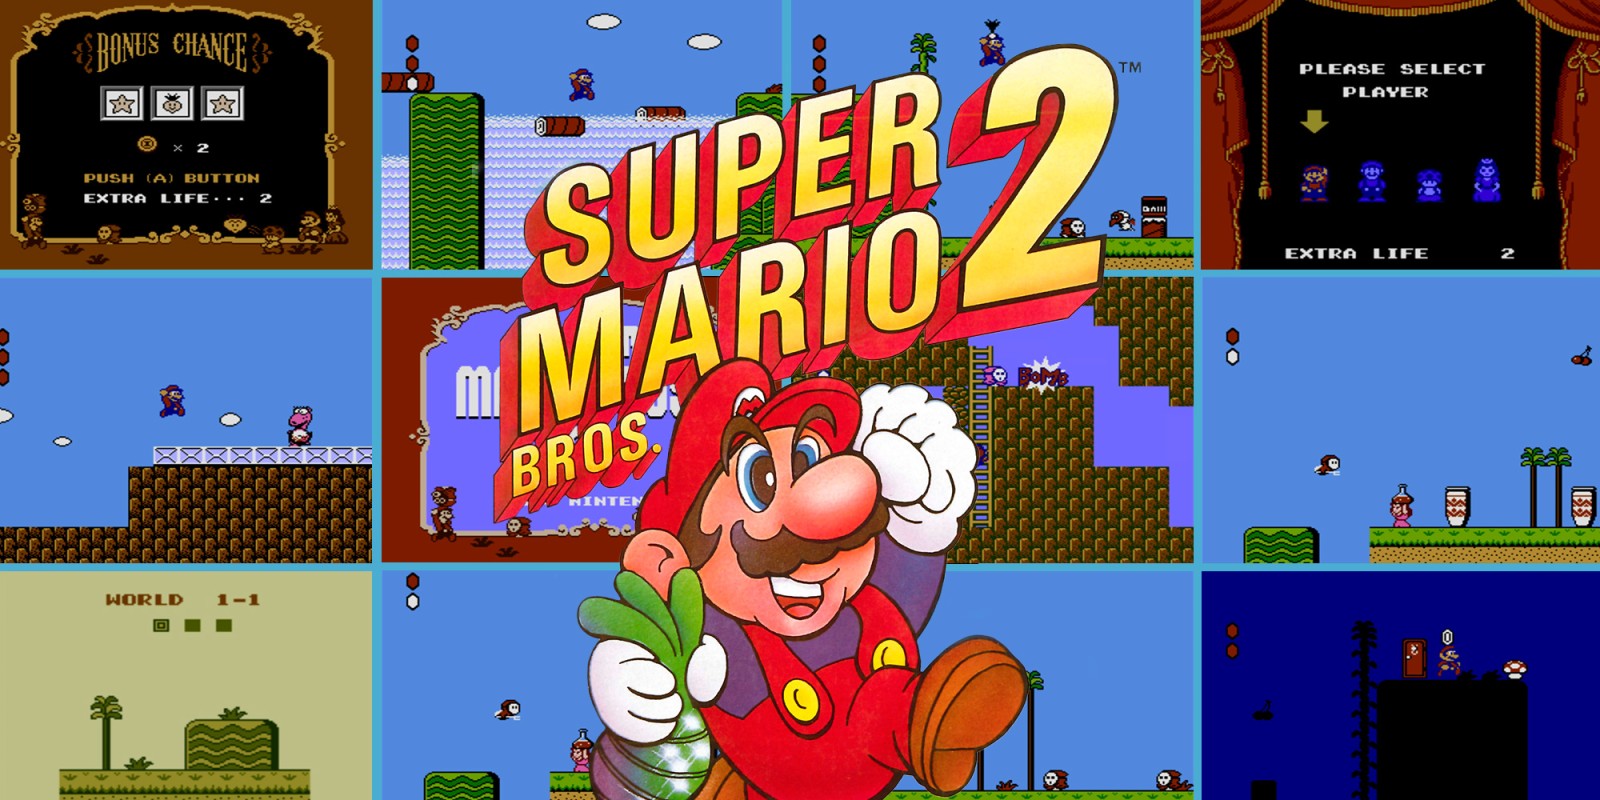 Cronologia de lançamento da Saga Super Mario! #supermario #mario